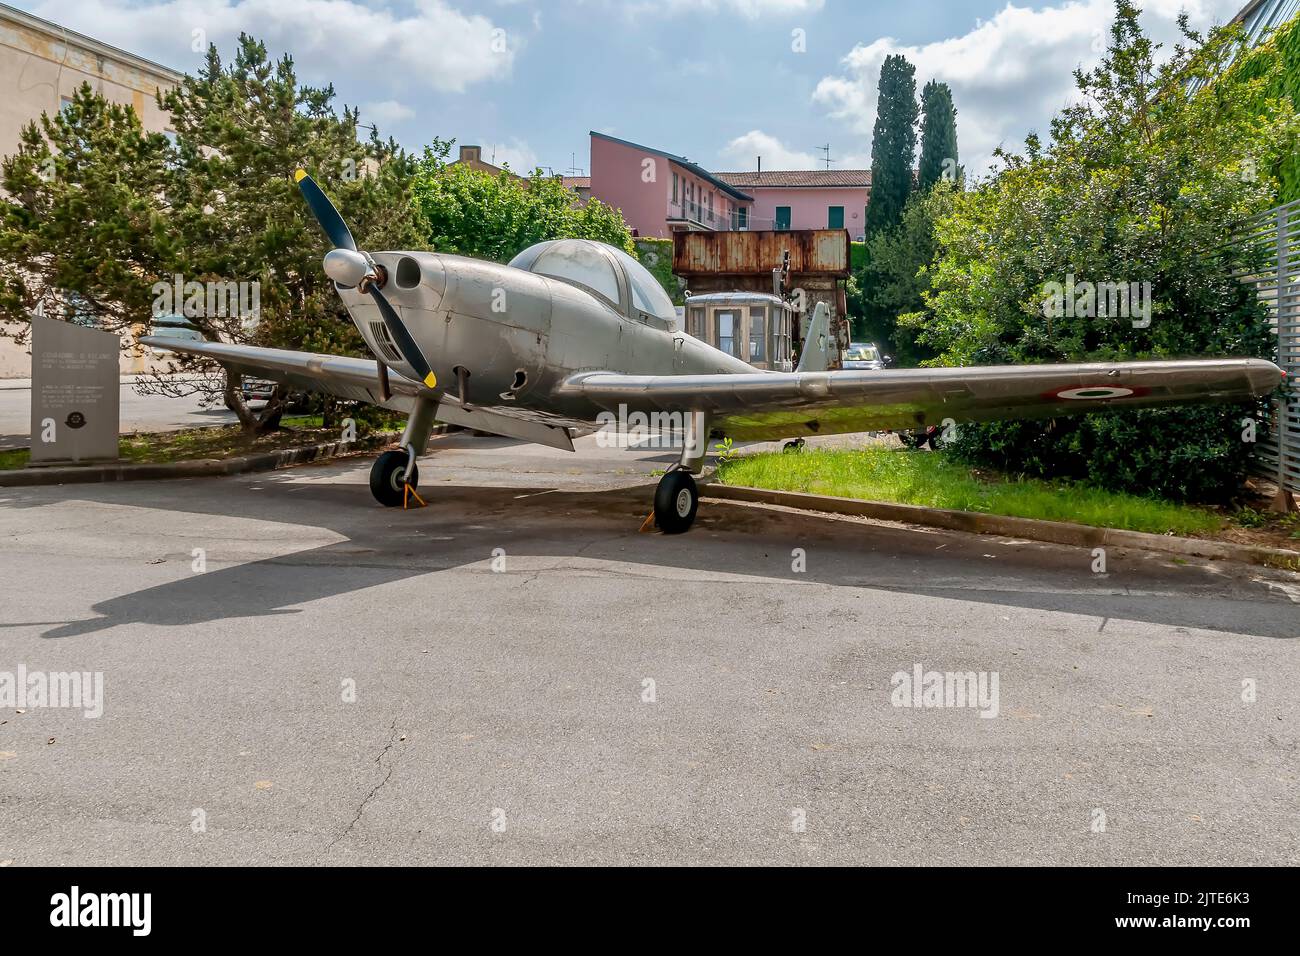 El avión de entrenamiento acrobático de dos plazas, P148, diseñado por Corradino d'Ascanio y colocado a la entrada del Museo Piaggio en Pontedera, Pisa Foto de stock